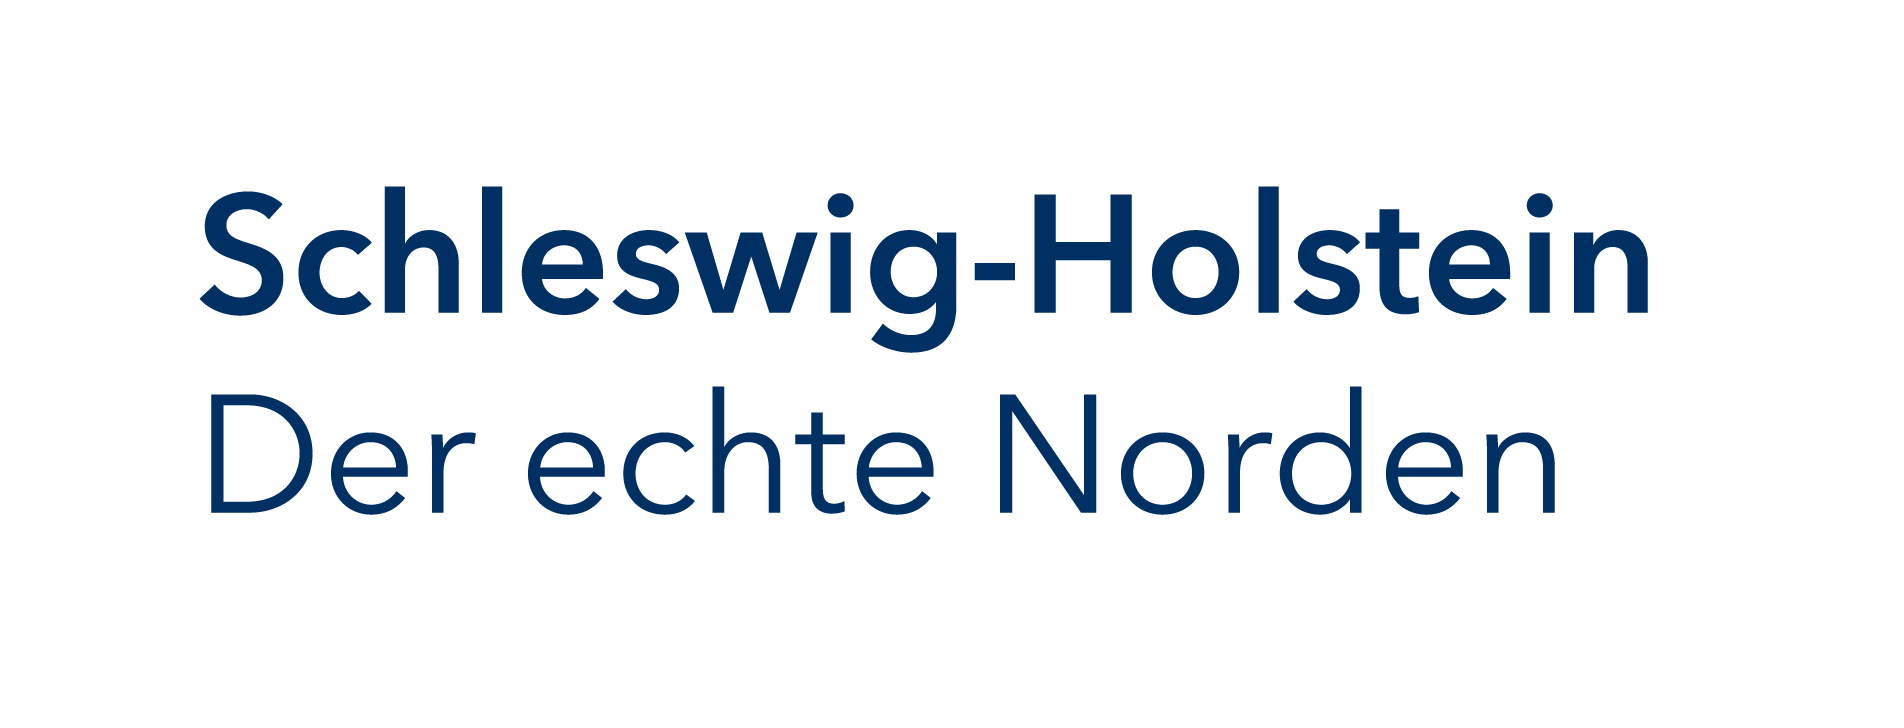 Claim des Landes Schleswig-Holstein